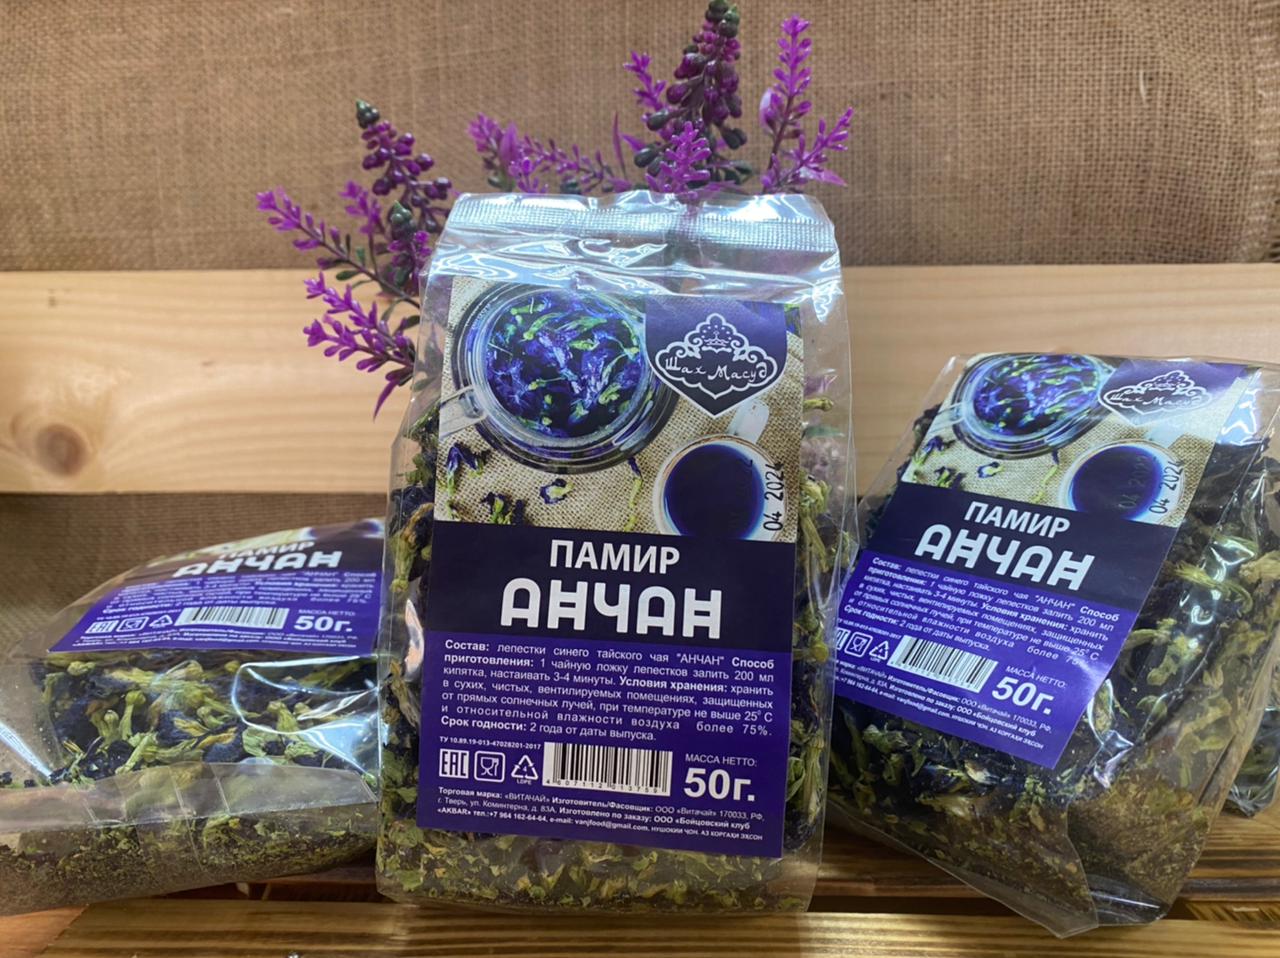 Анчан Памир синий чай 50 гр. 